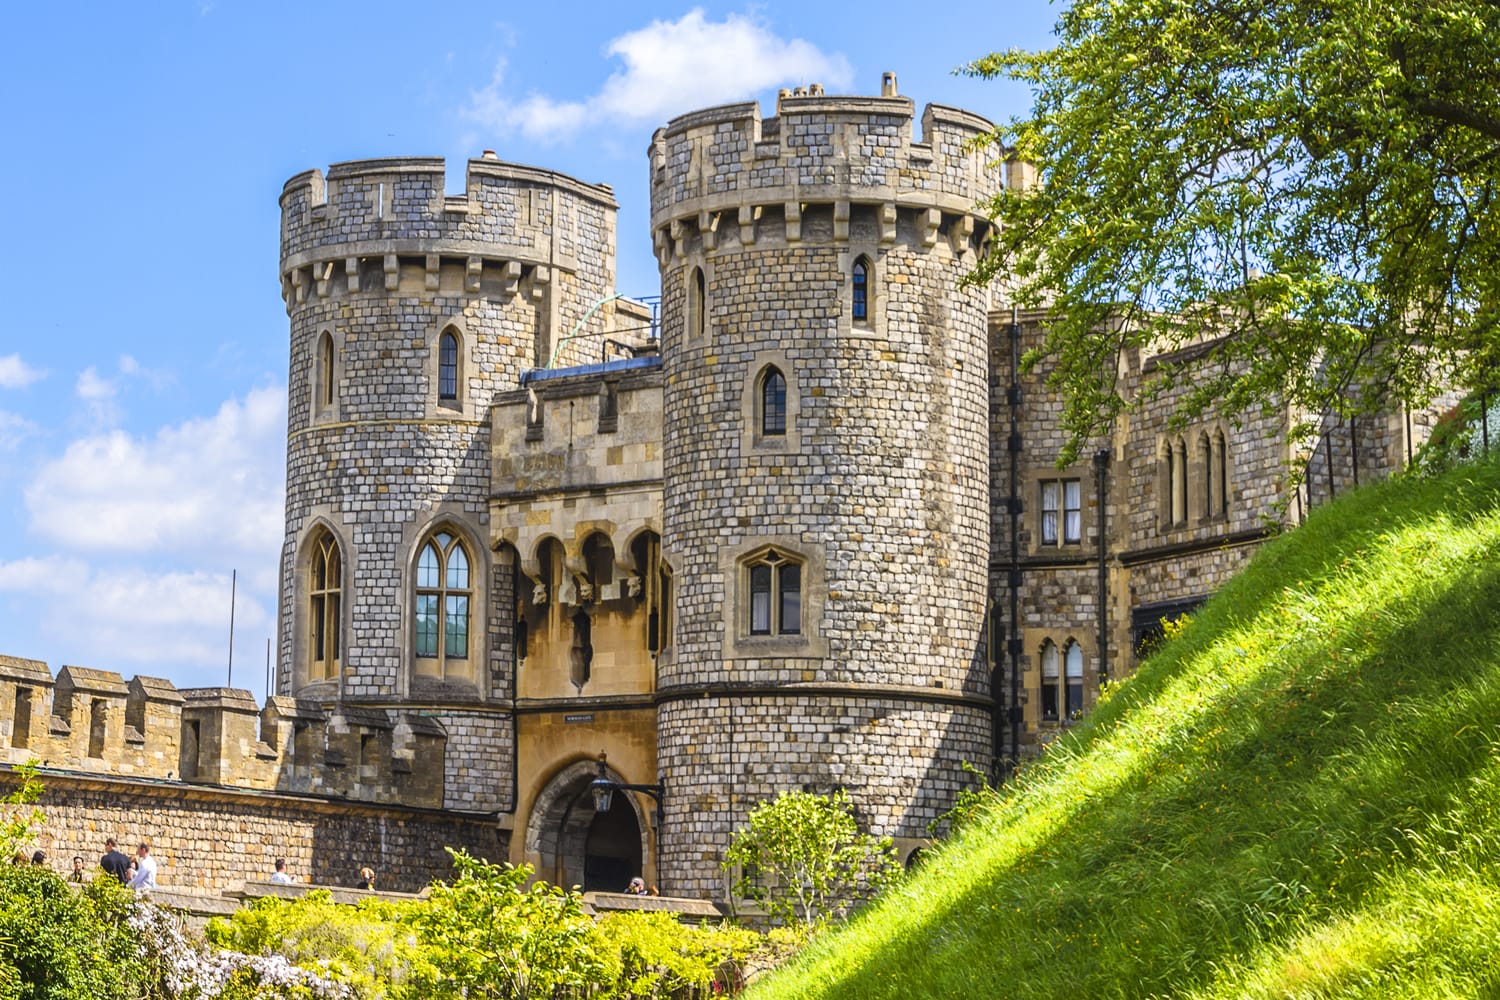 Εξωτερική άποψη του μεσαιωνικού κάστρου του Windsor. Το Windsor Castle είναι μια βασιλική κατοικία στο Windsor στην αγγλική κομητεία Berkshire.